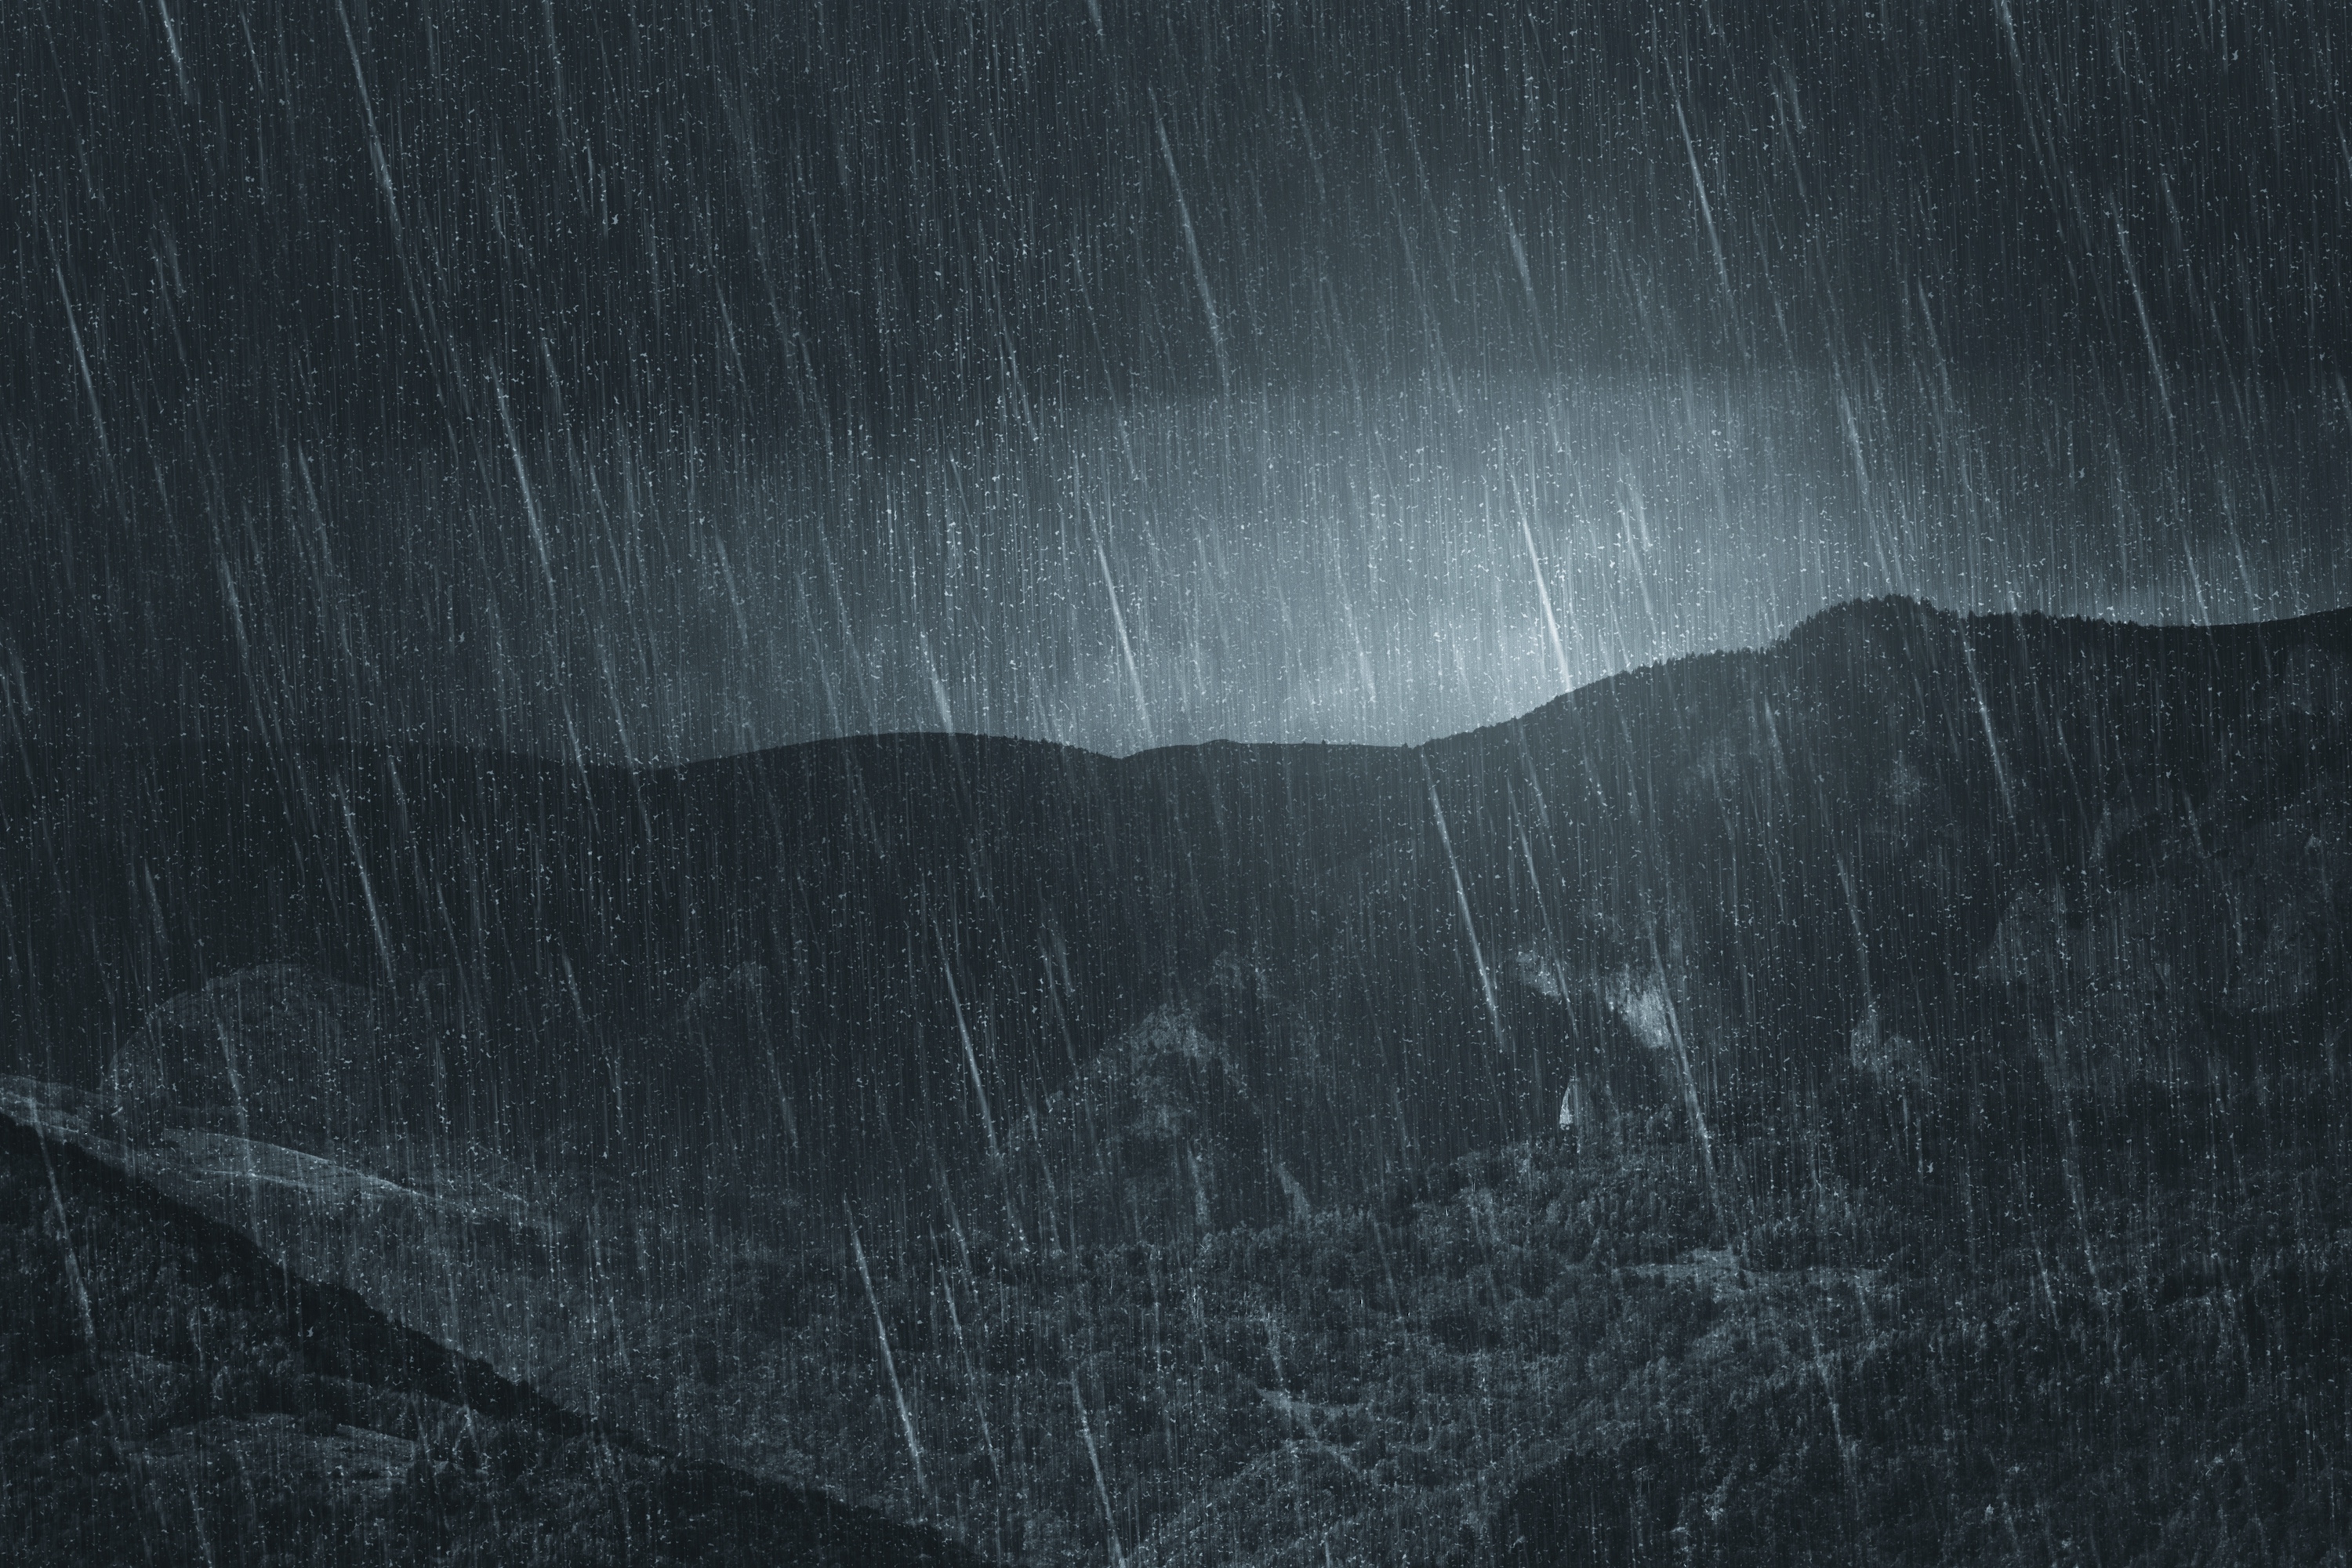 Pluies intenses sur des reliefs montagneux. © andreiuc88, Adobe Stock